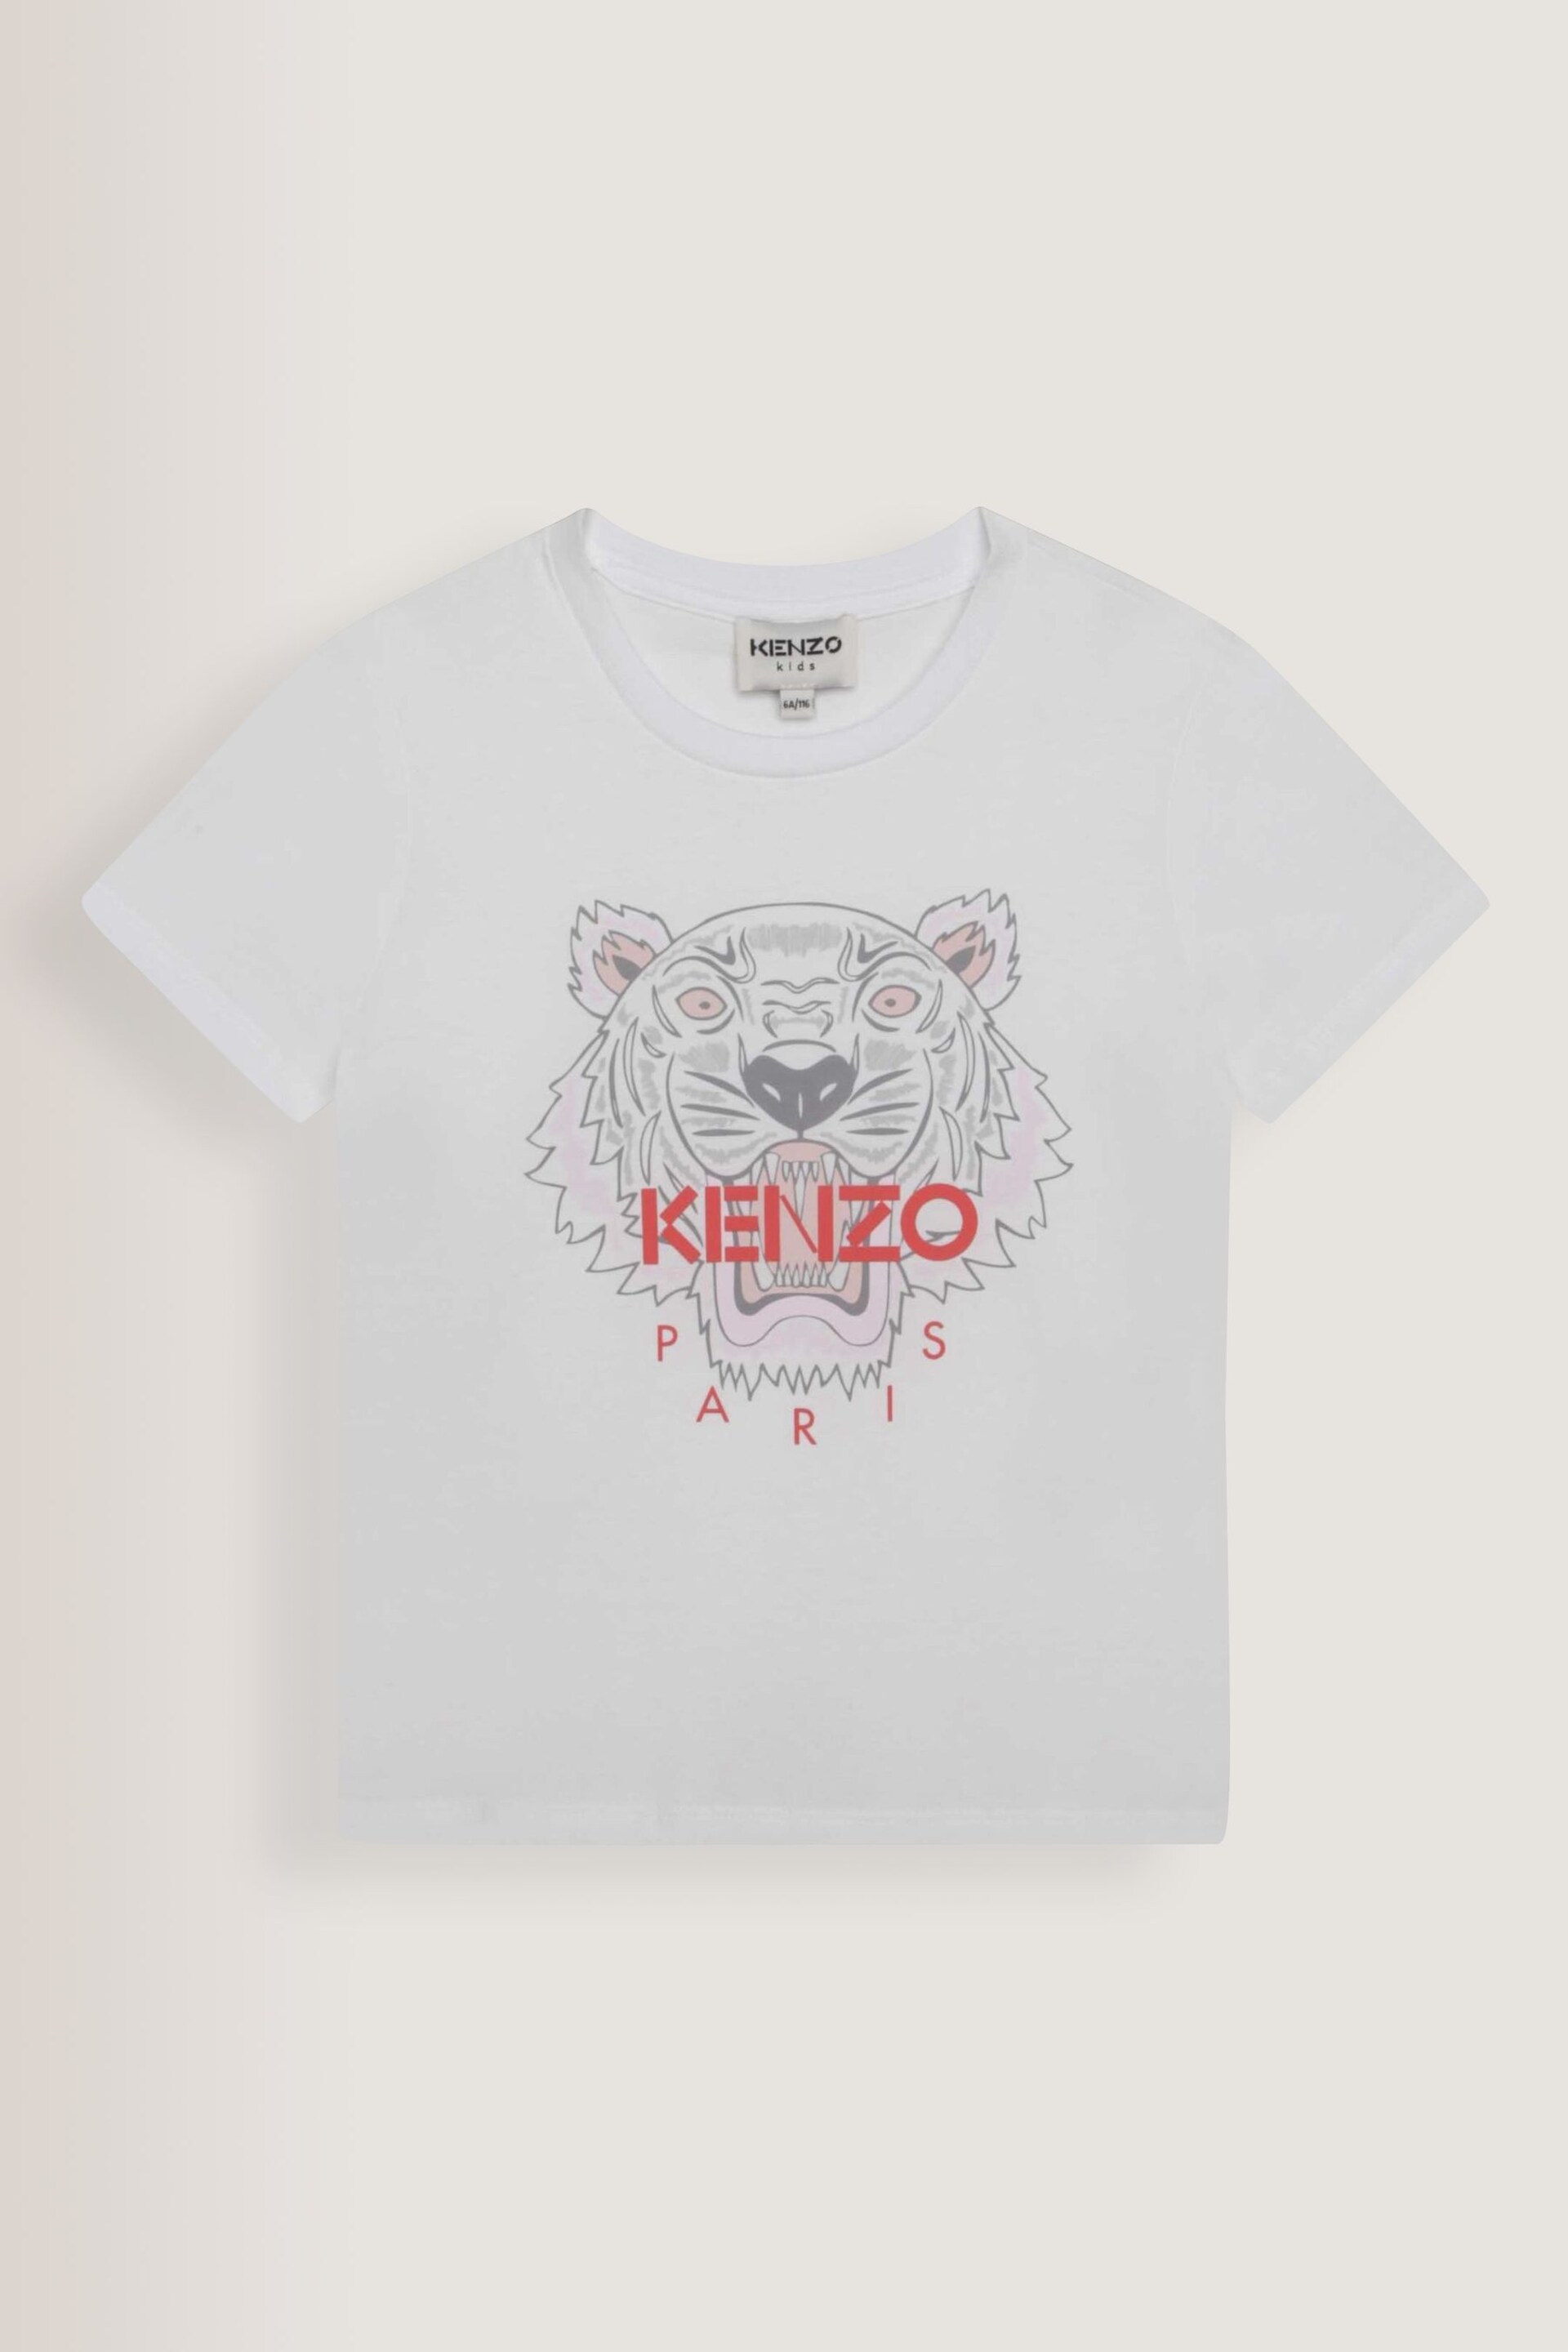 KENZO KIDS Tiger Multi/White Print Logo T-Shirt - Image 1 of 2